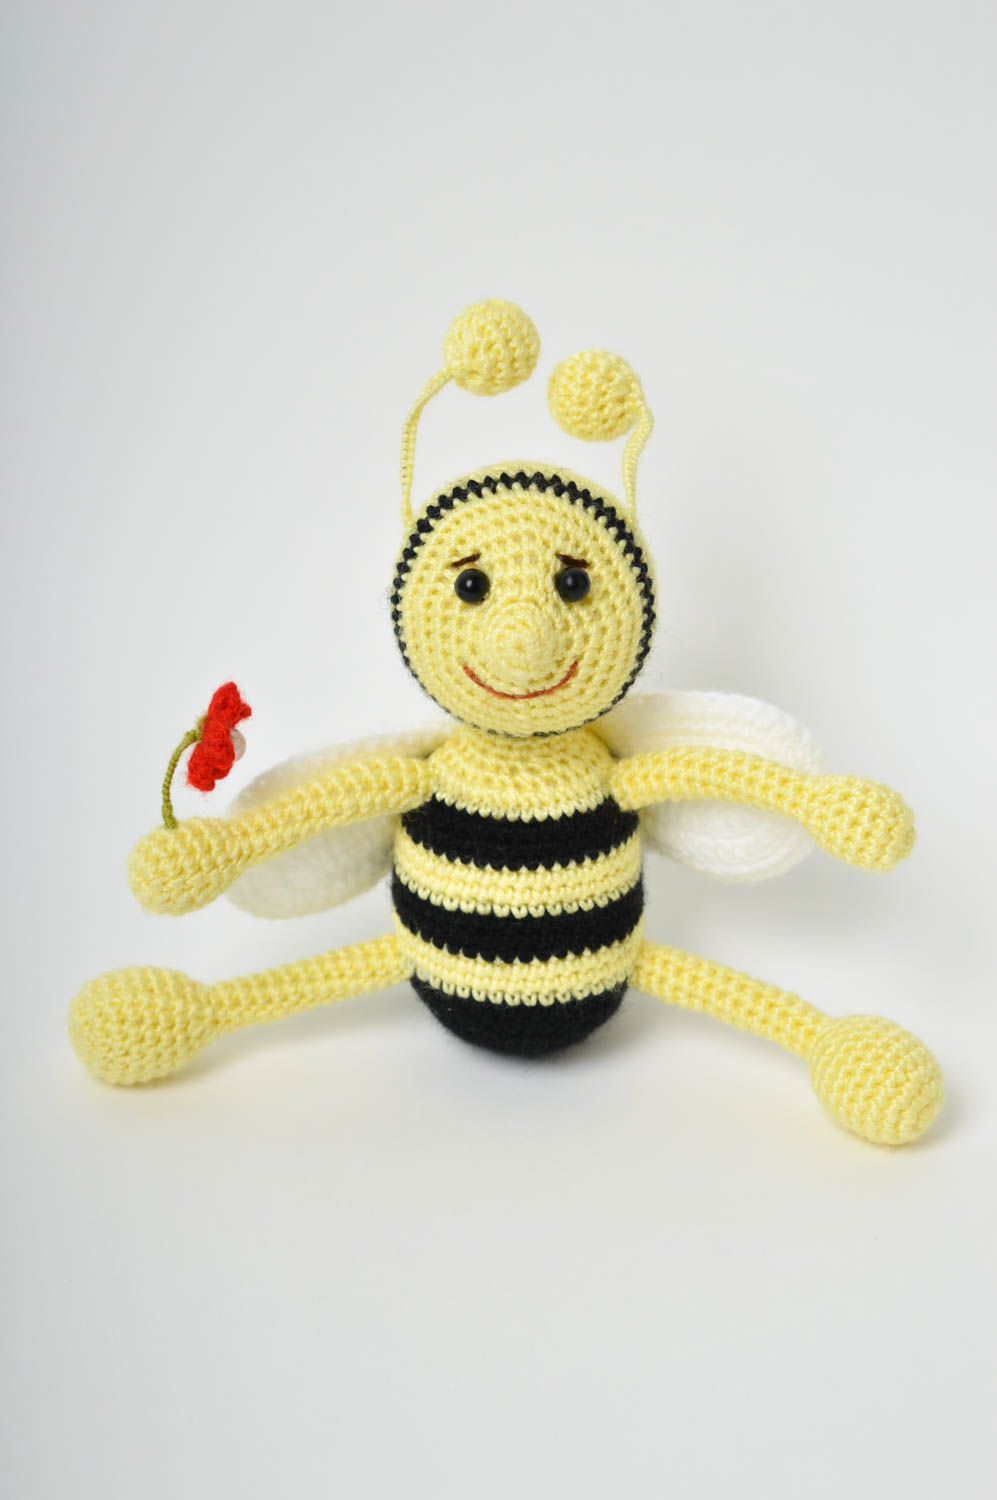 Мягкая игрушка ручной работы игрушка пчелка крючком игрушка авторская кукла фото 2